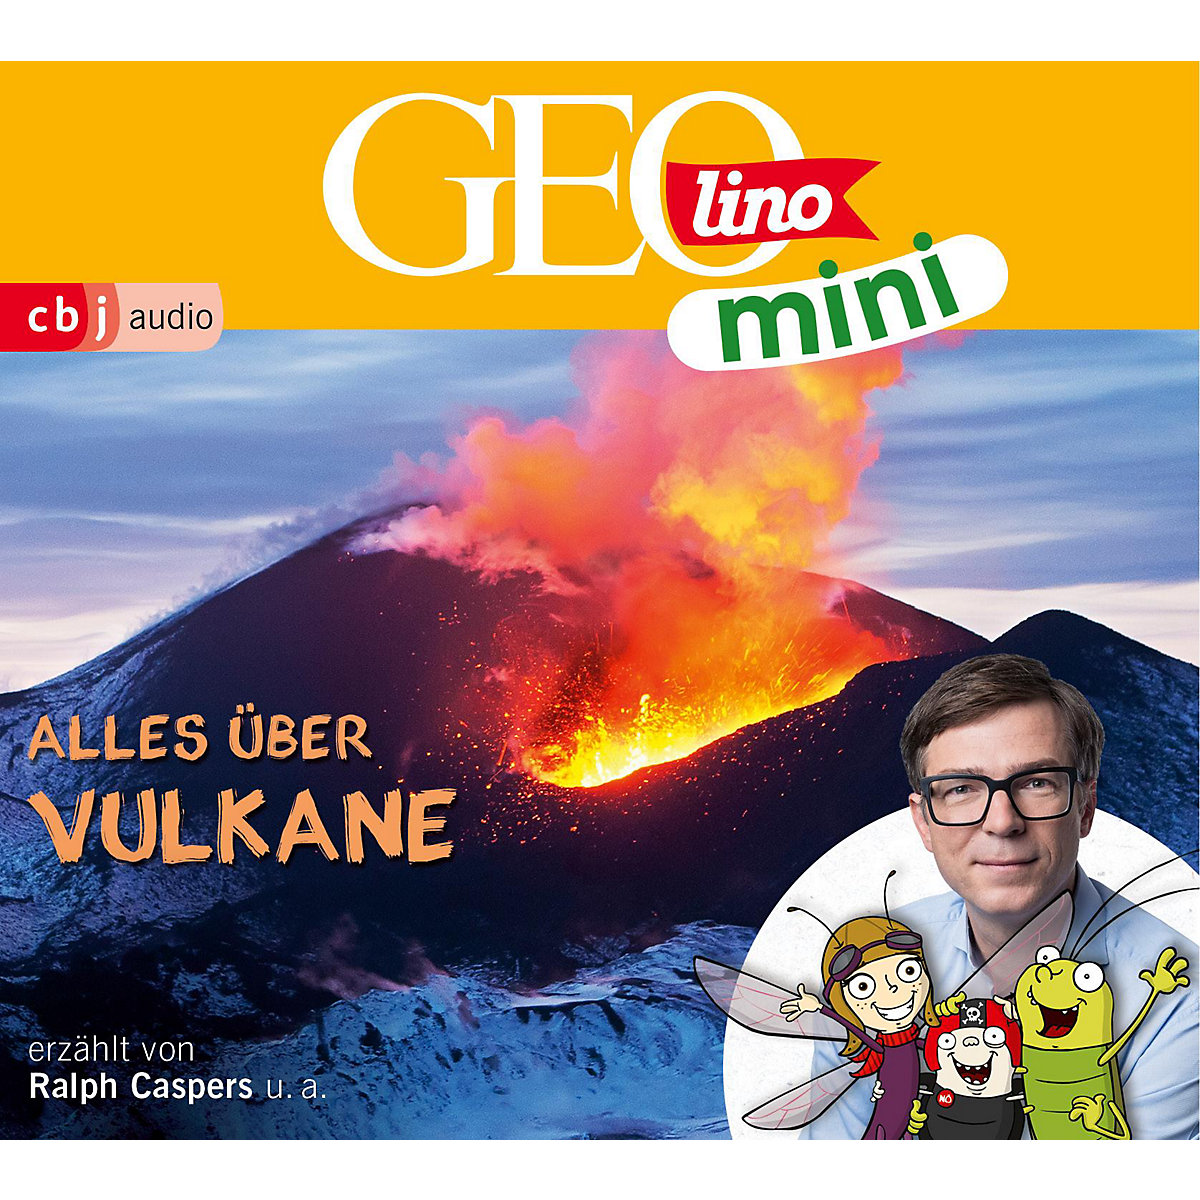 cbj + cbt Verlag CD GEOlino mini 10: Alles über Vulkane